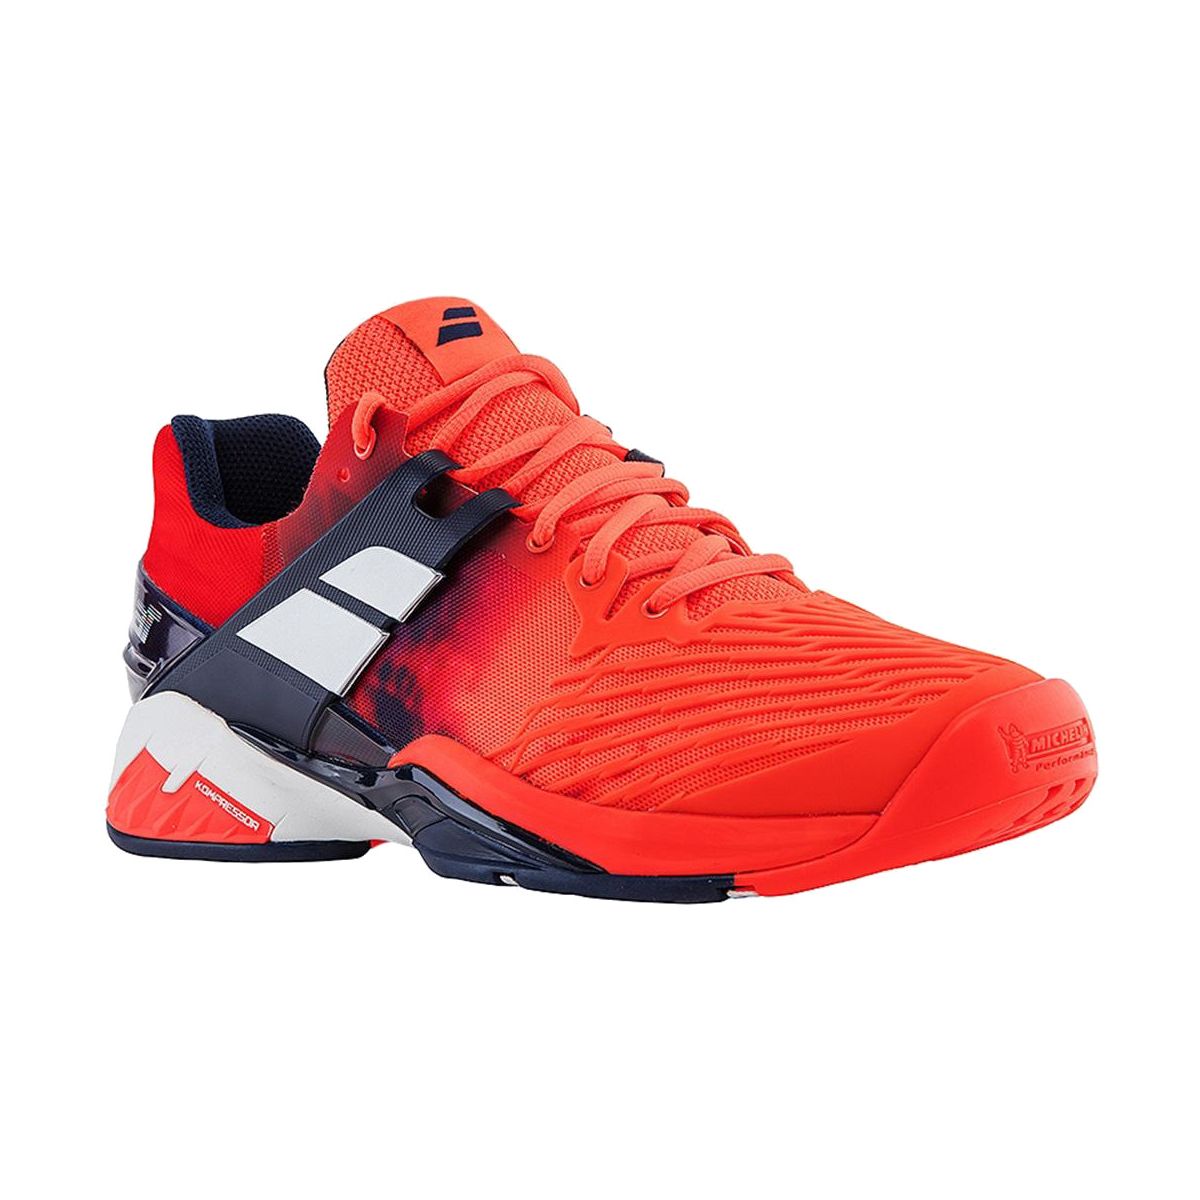 Babolat Propulse Fury All Court Men's Tennis Shoes 30S17208-